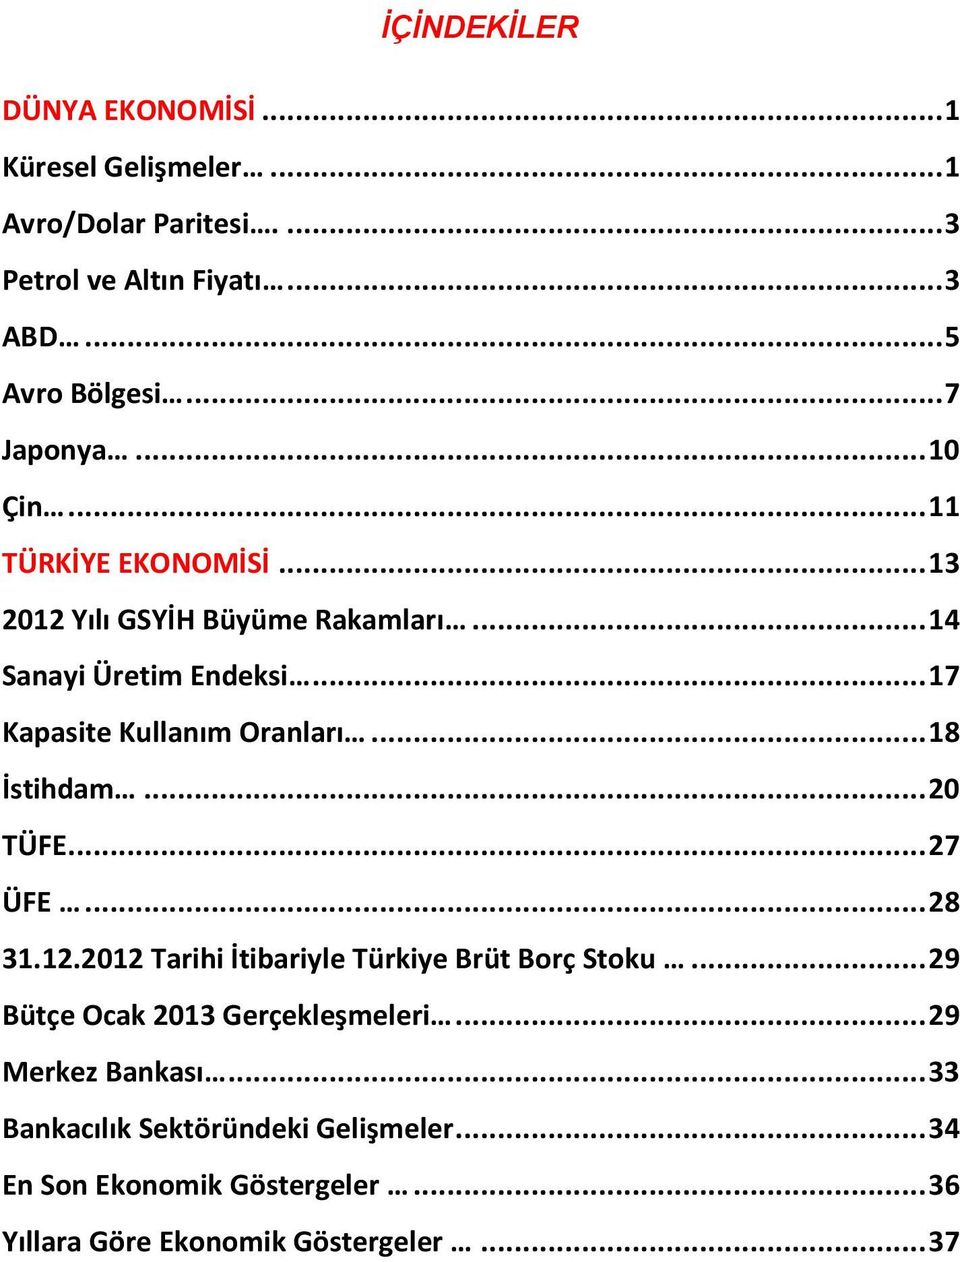 .. 17 Kapasite Kullanım Oranları... 18 İstihdam... 20 TÜFE... 27 ÜFE... 28 31.12.2012 Tarihi İtibariyle Türkiye Brüt Borç Stoku.